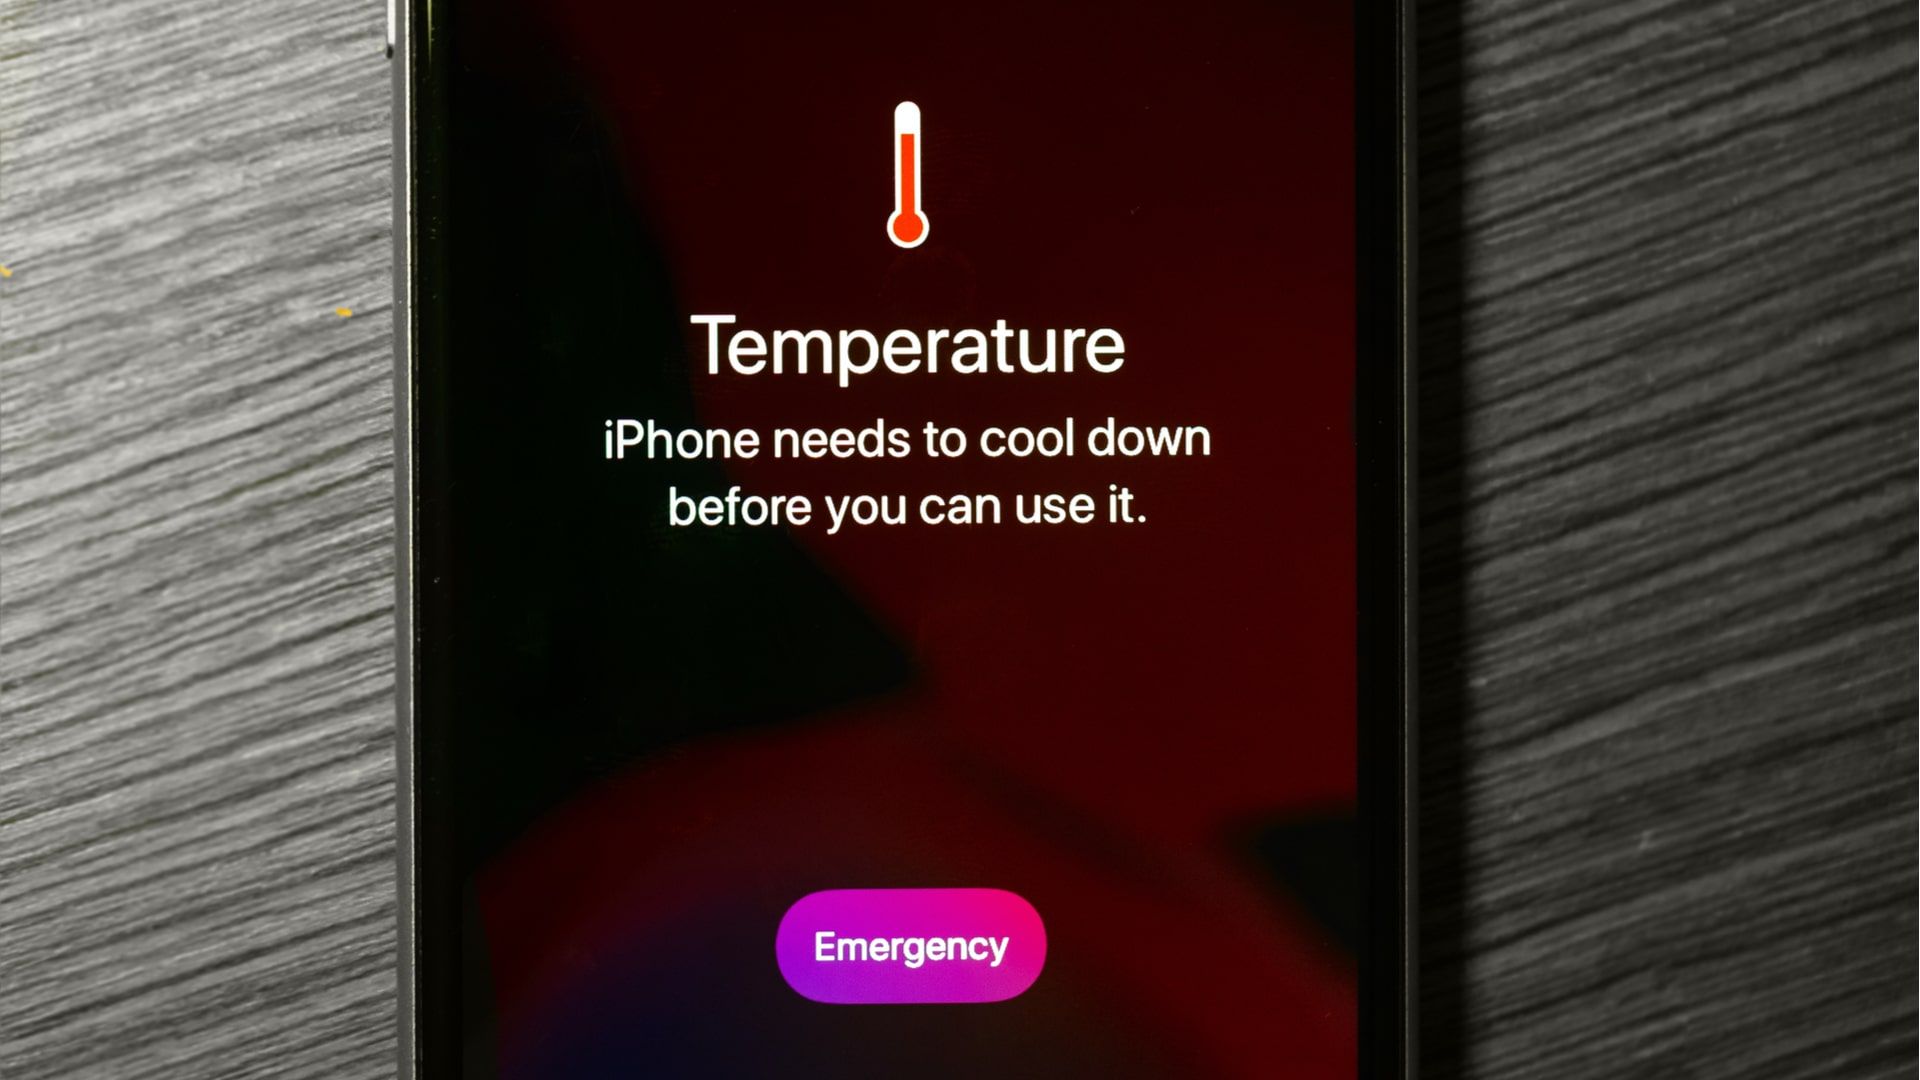 iPhone esquentando: celular da Apple mostra mensagem quando está muito quente (Foto: Shutterstock)